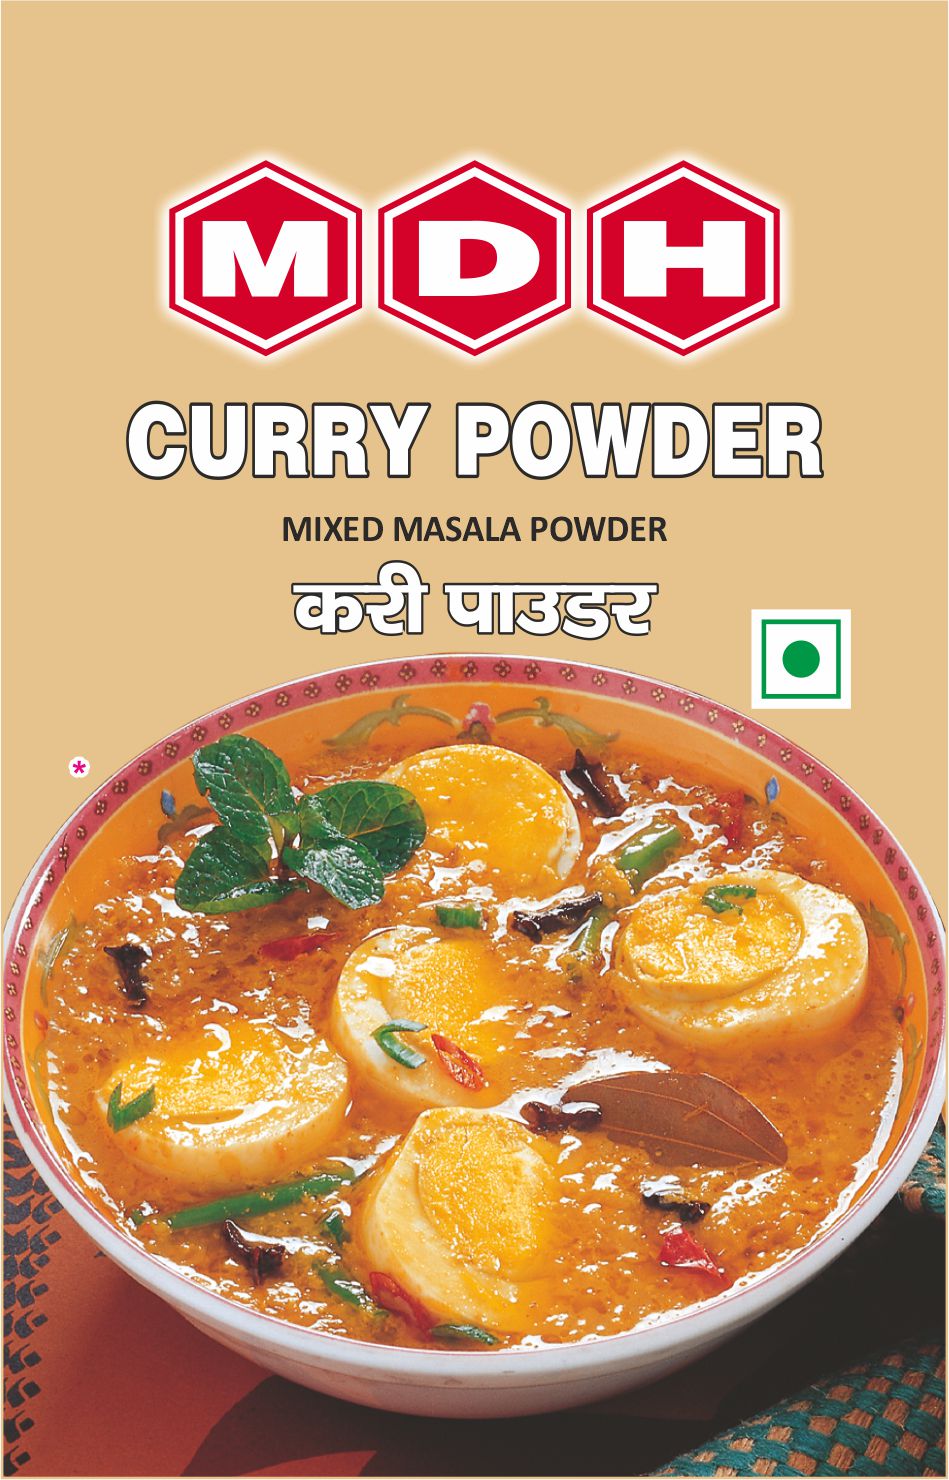 MDH-Curry Powder Masala-100g